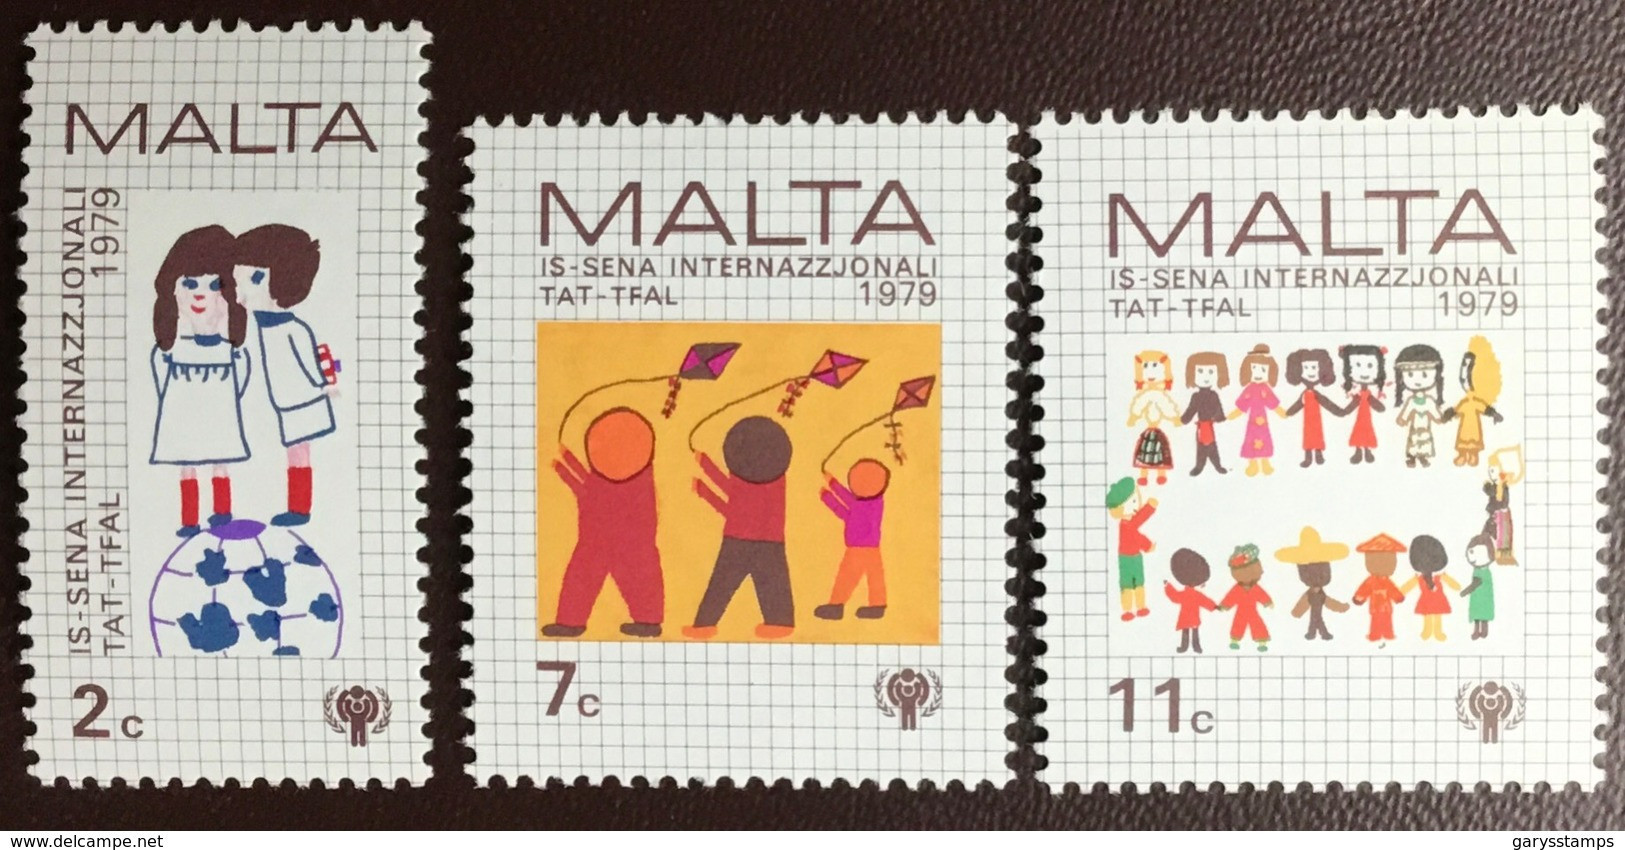 Malta 1979 Year Of The Child MNH - Malta